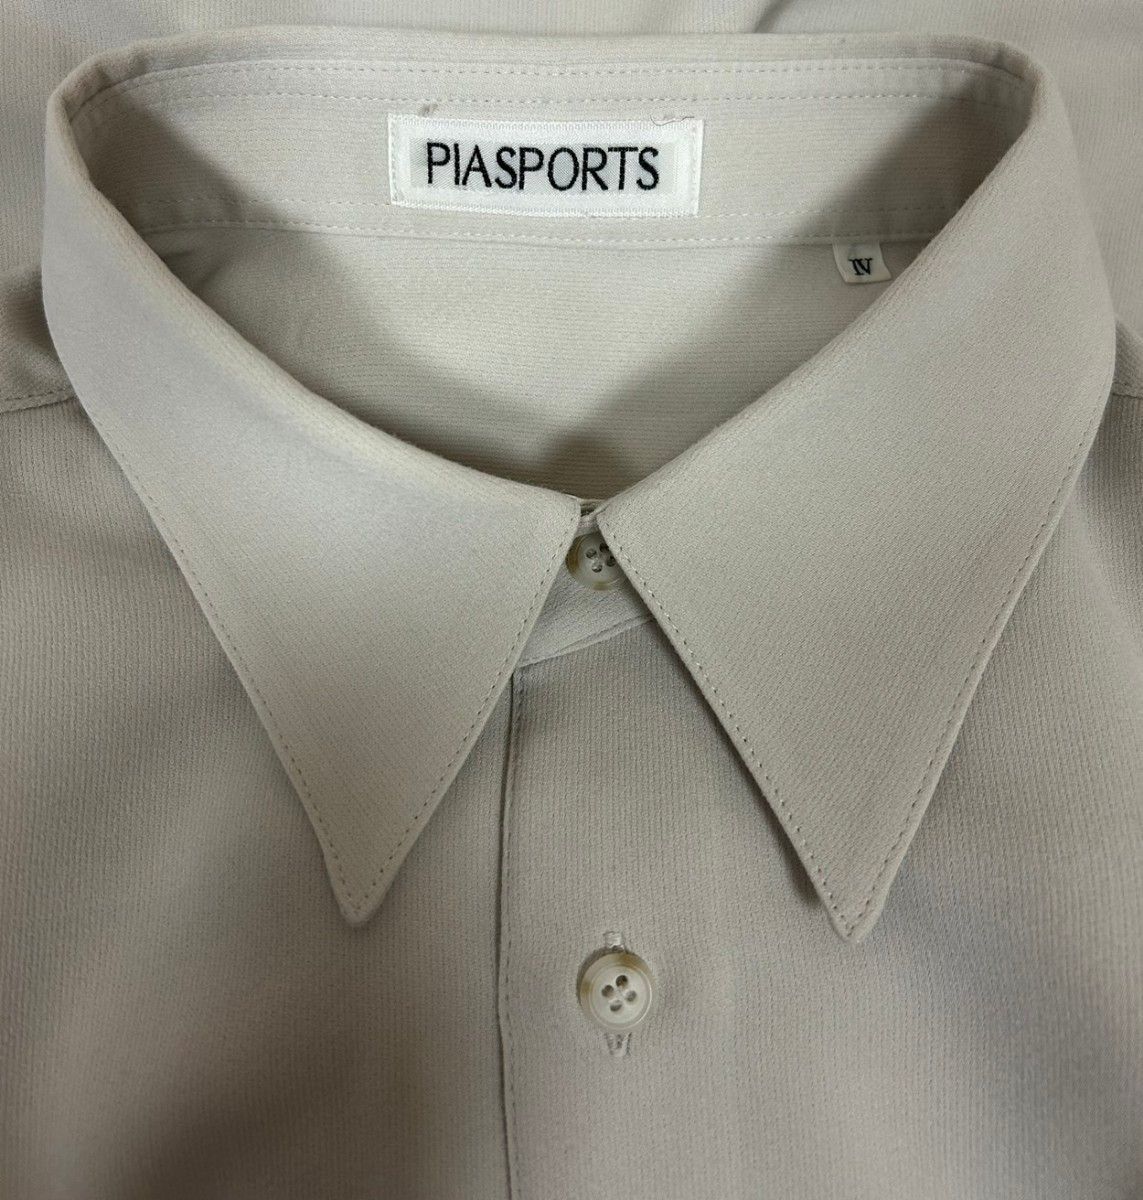 PIA SPORTS ピアスポーツ 日本製 刺繍 メンズ長袖シャツ ポリエステル100% ホワイト サイズ4 XLサイズ